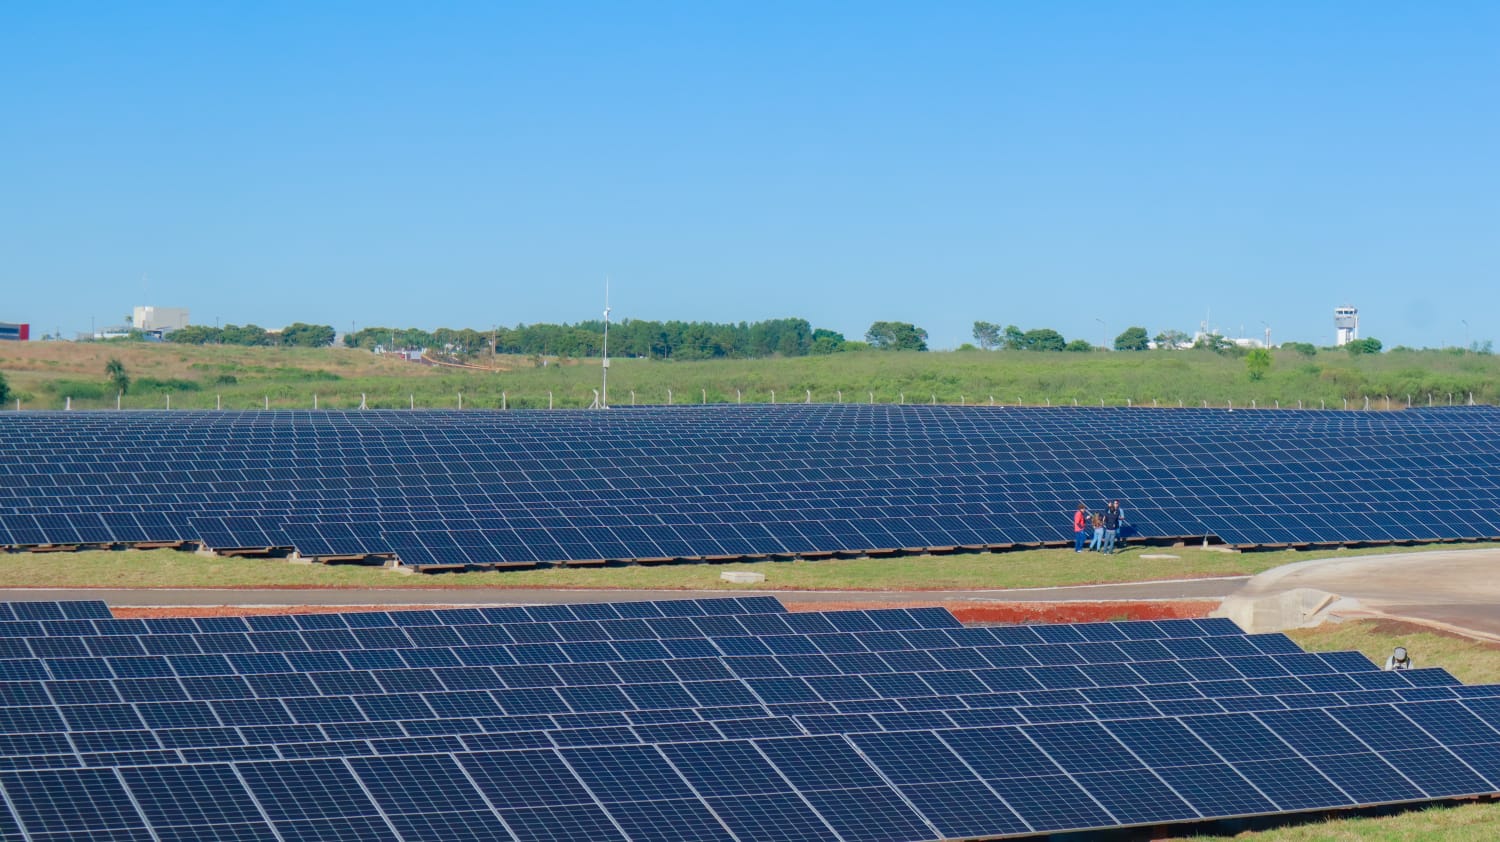 Ponen en marcha el Parque Solar Fotovoltaico "Silicon Misiones", de 5 megas, capaz de abastecer de energía a unas 2 mil familias de Posadas imagen-16